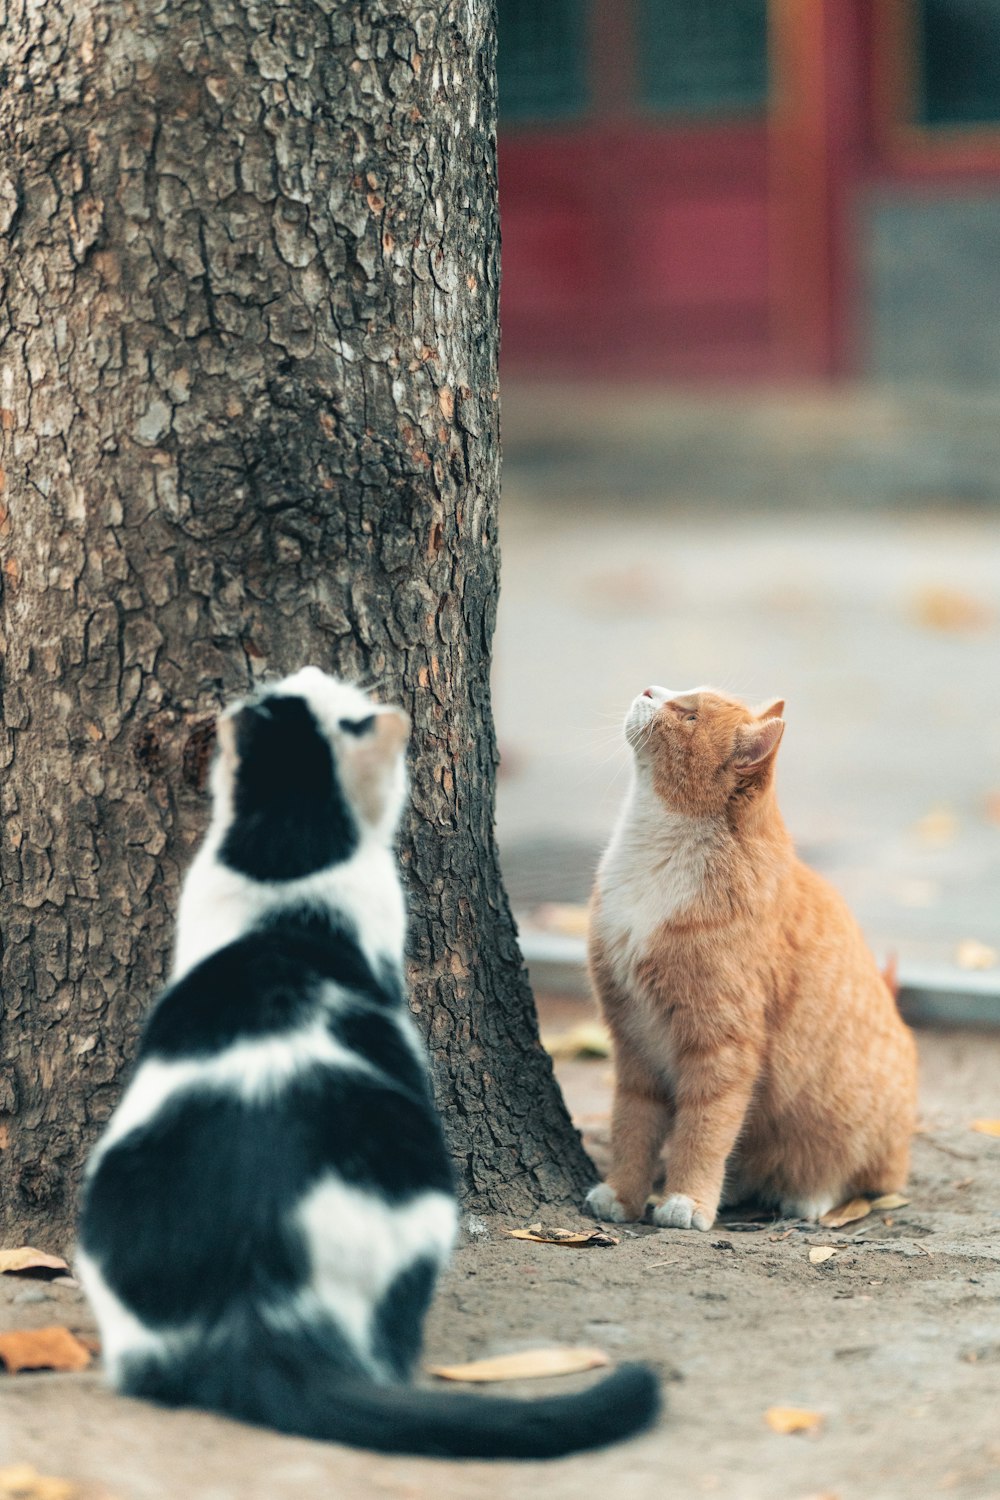 나무 옆에 앉아 있는 고양이 두 마리